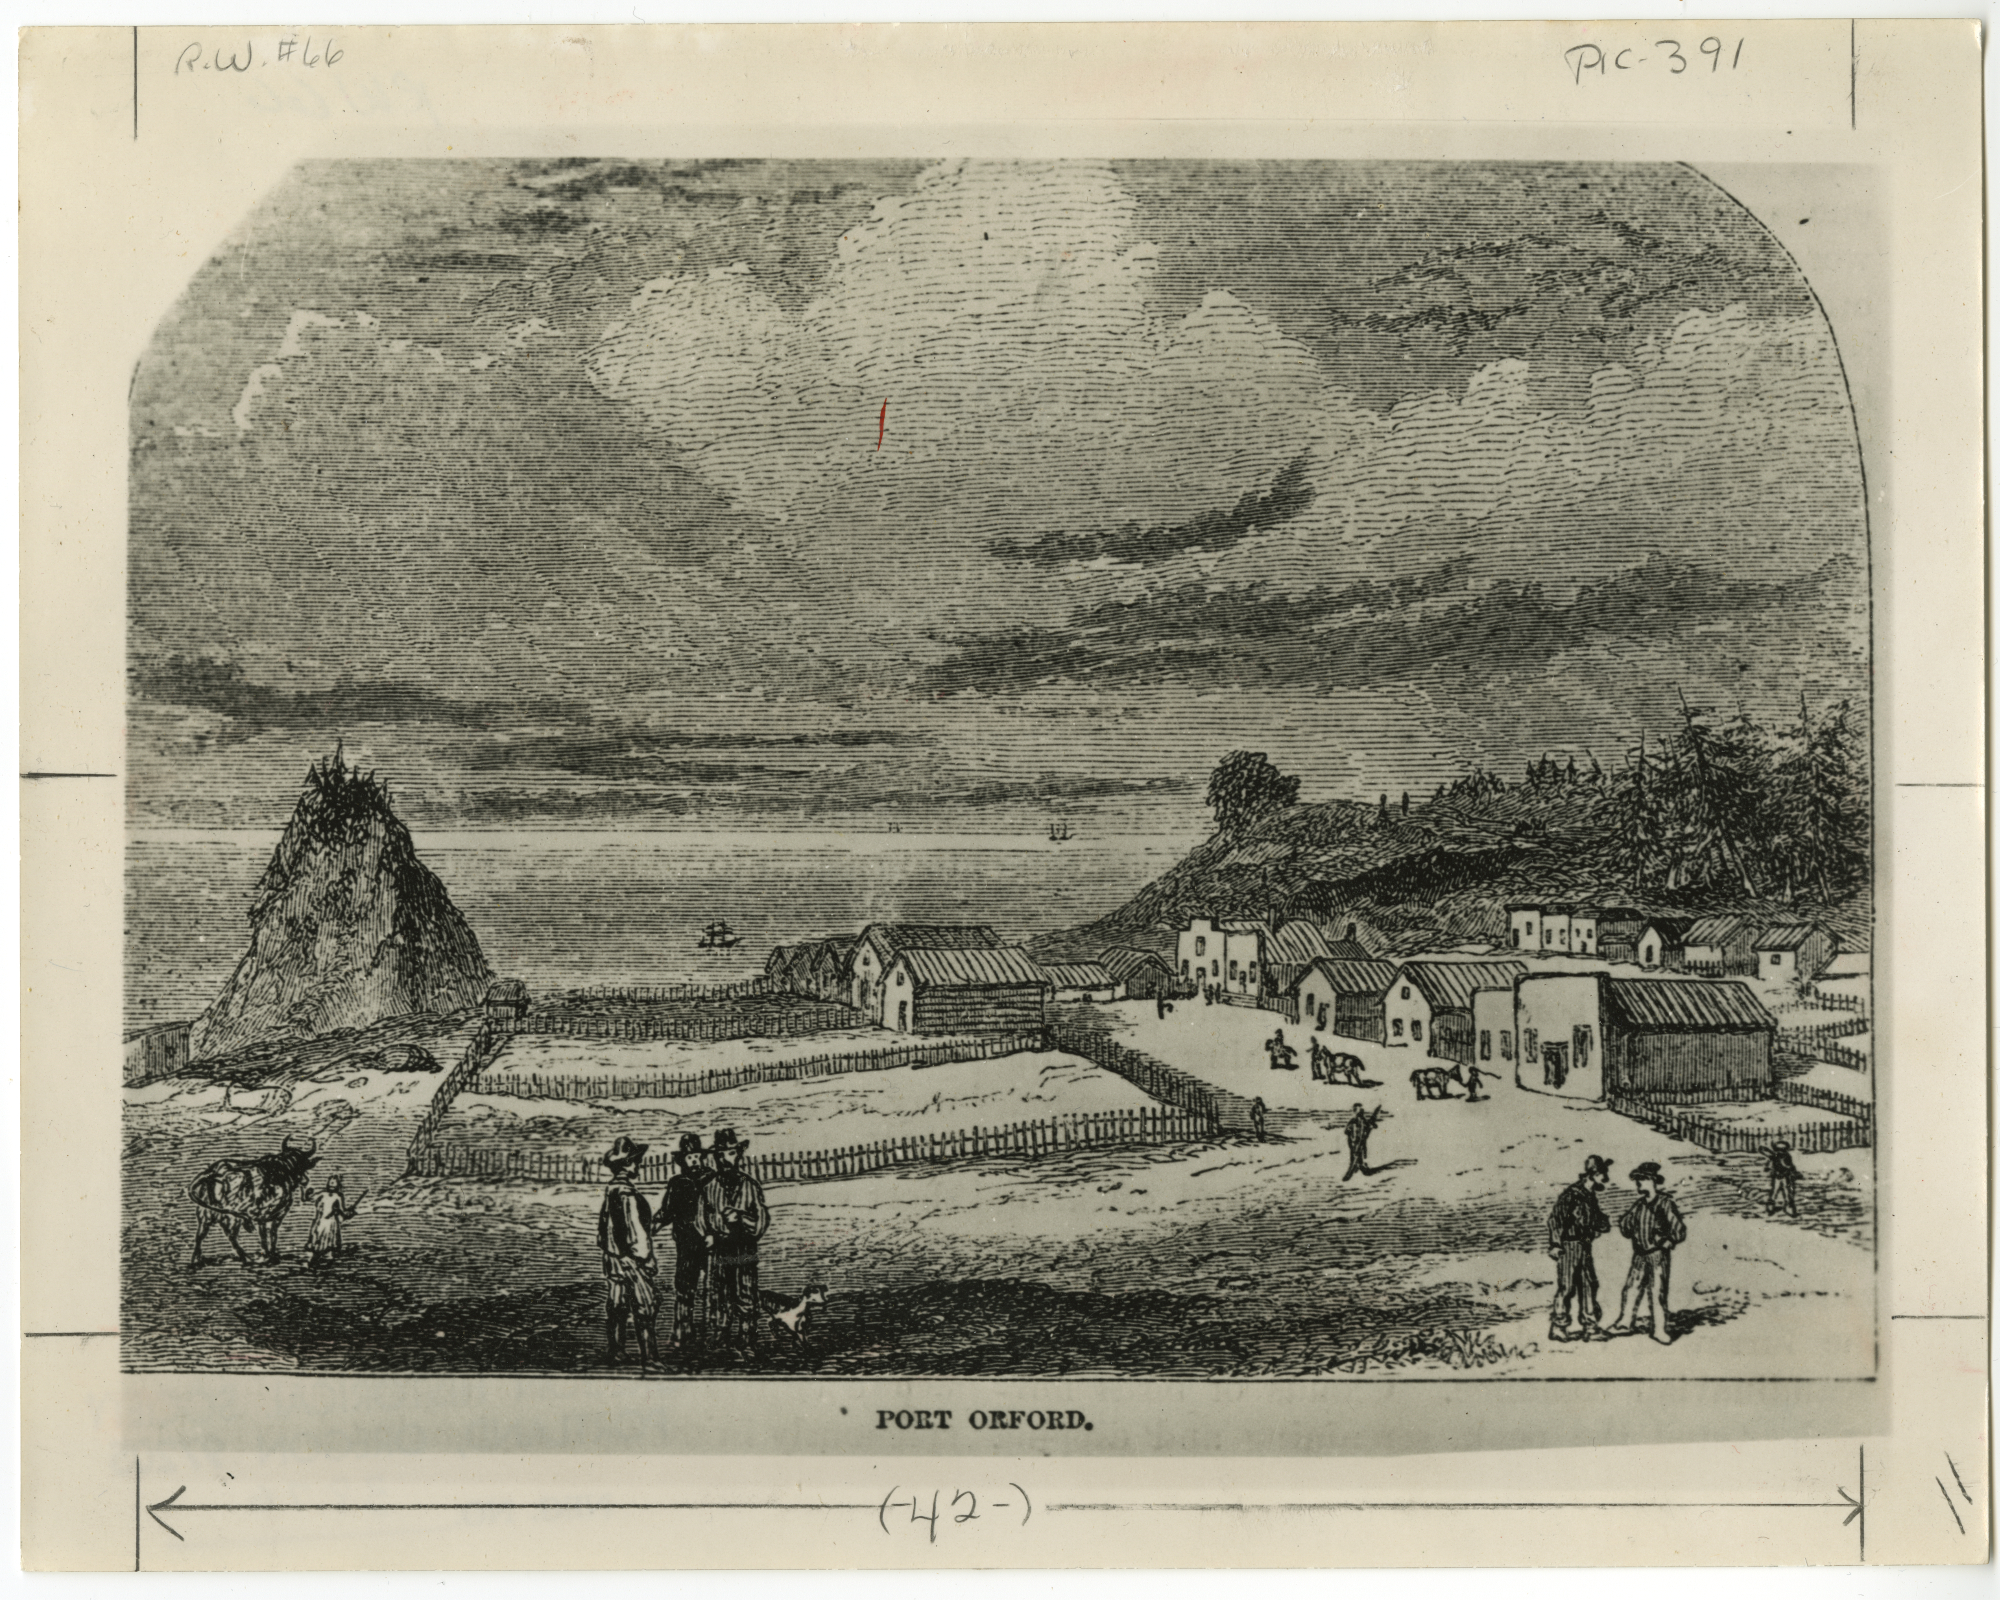 City of Port Orford Illustration for Harper's Magazine, 1856